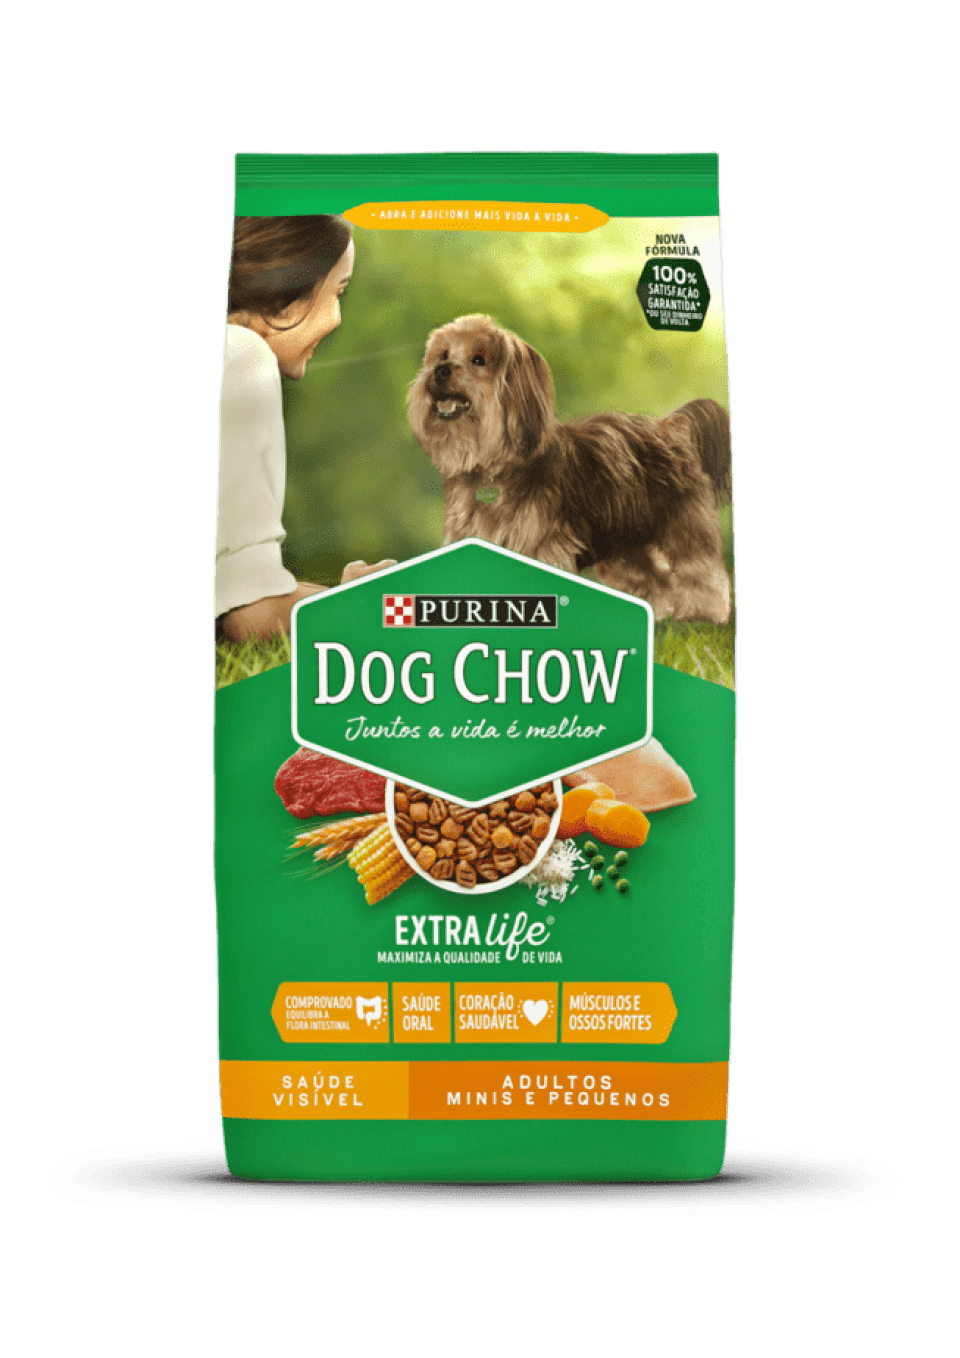 Kas Dog Chow on hea koeratoit? Tutvu selle peamiste koostisosadega